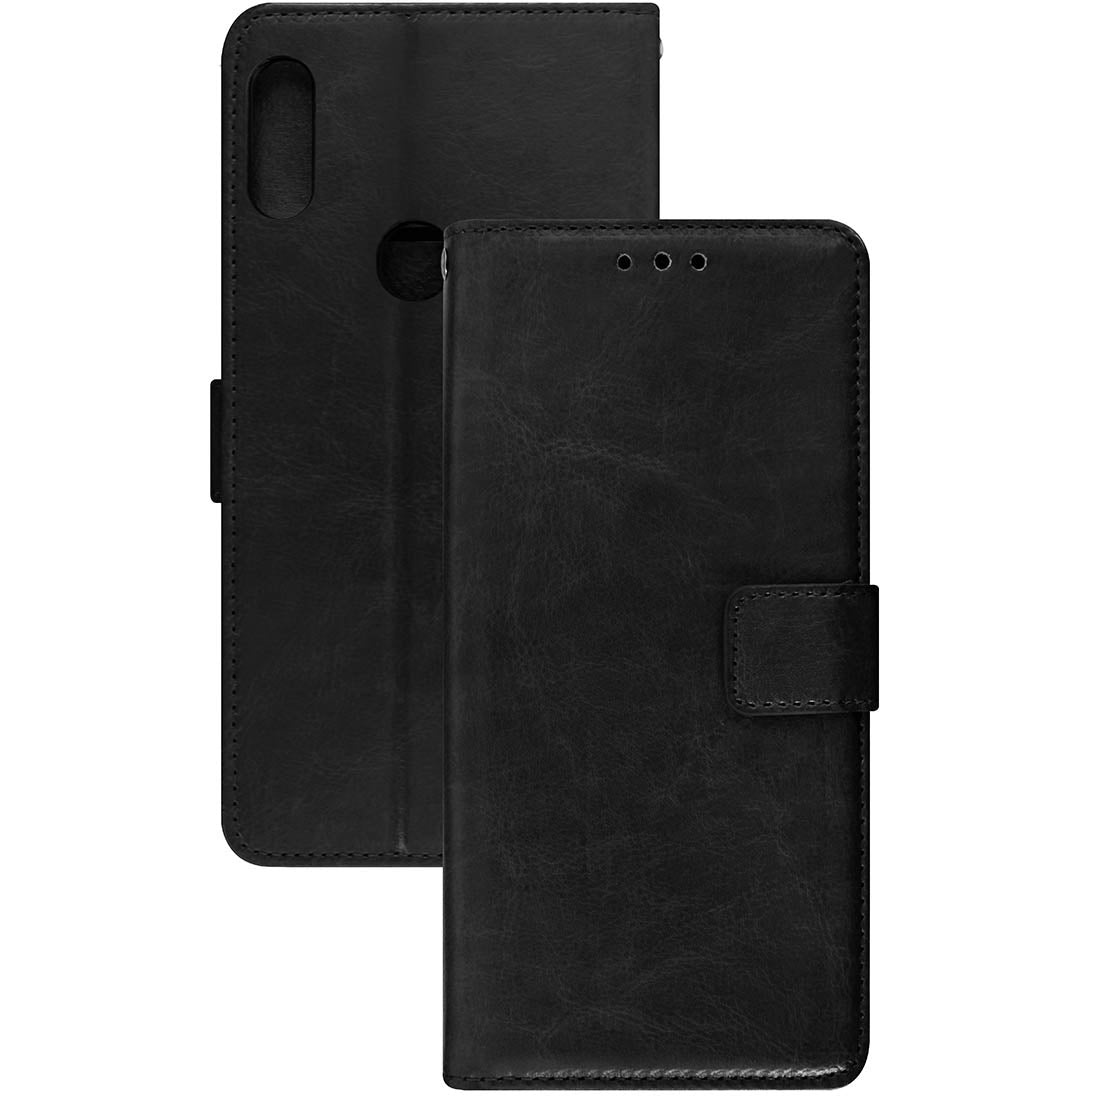 Premium Wallet Flip Cover for Mi Redmi Note 7 Pro